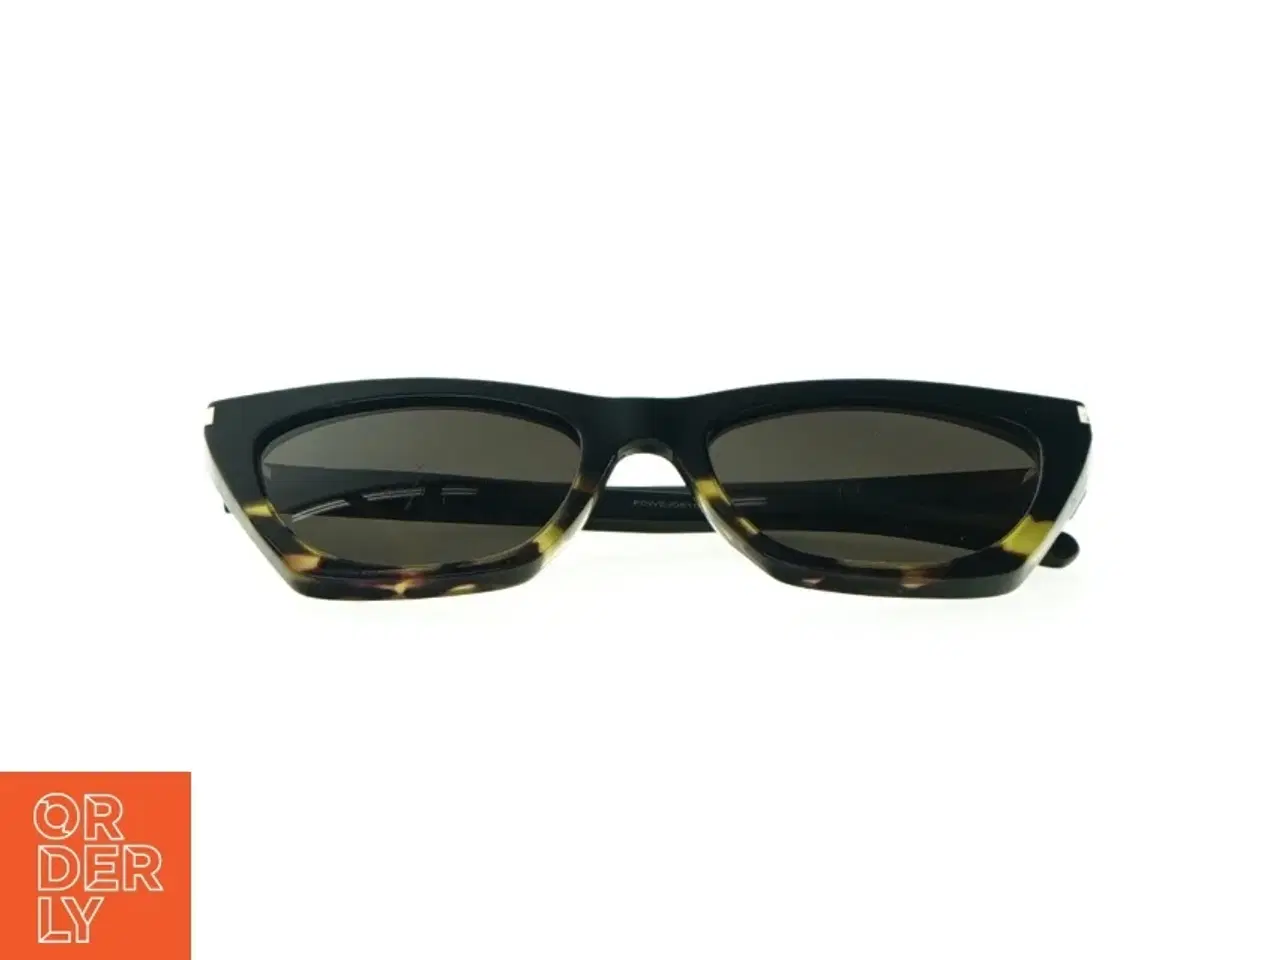 Billede 2 - Solbriller fra Saint Laurent Paris (str. 15 x 6 cm)